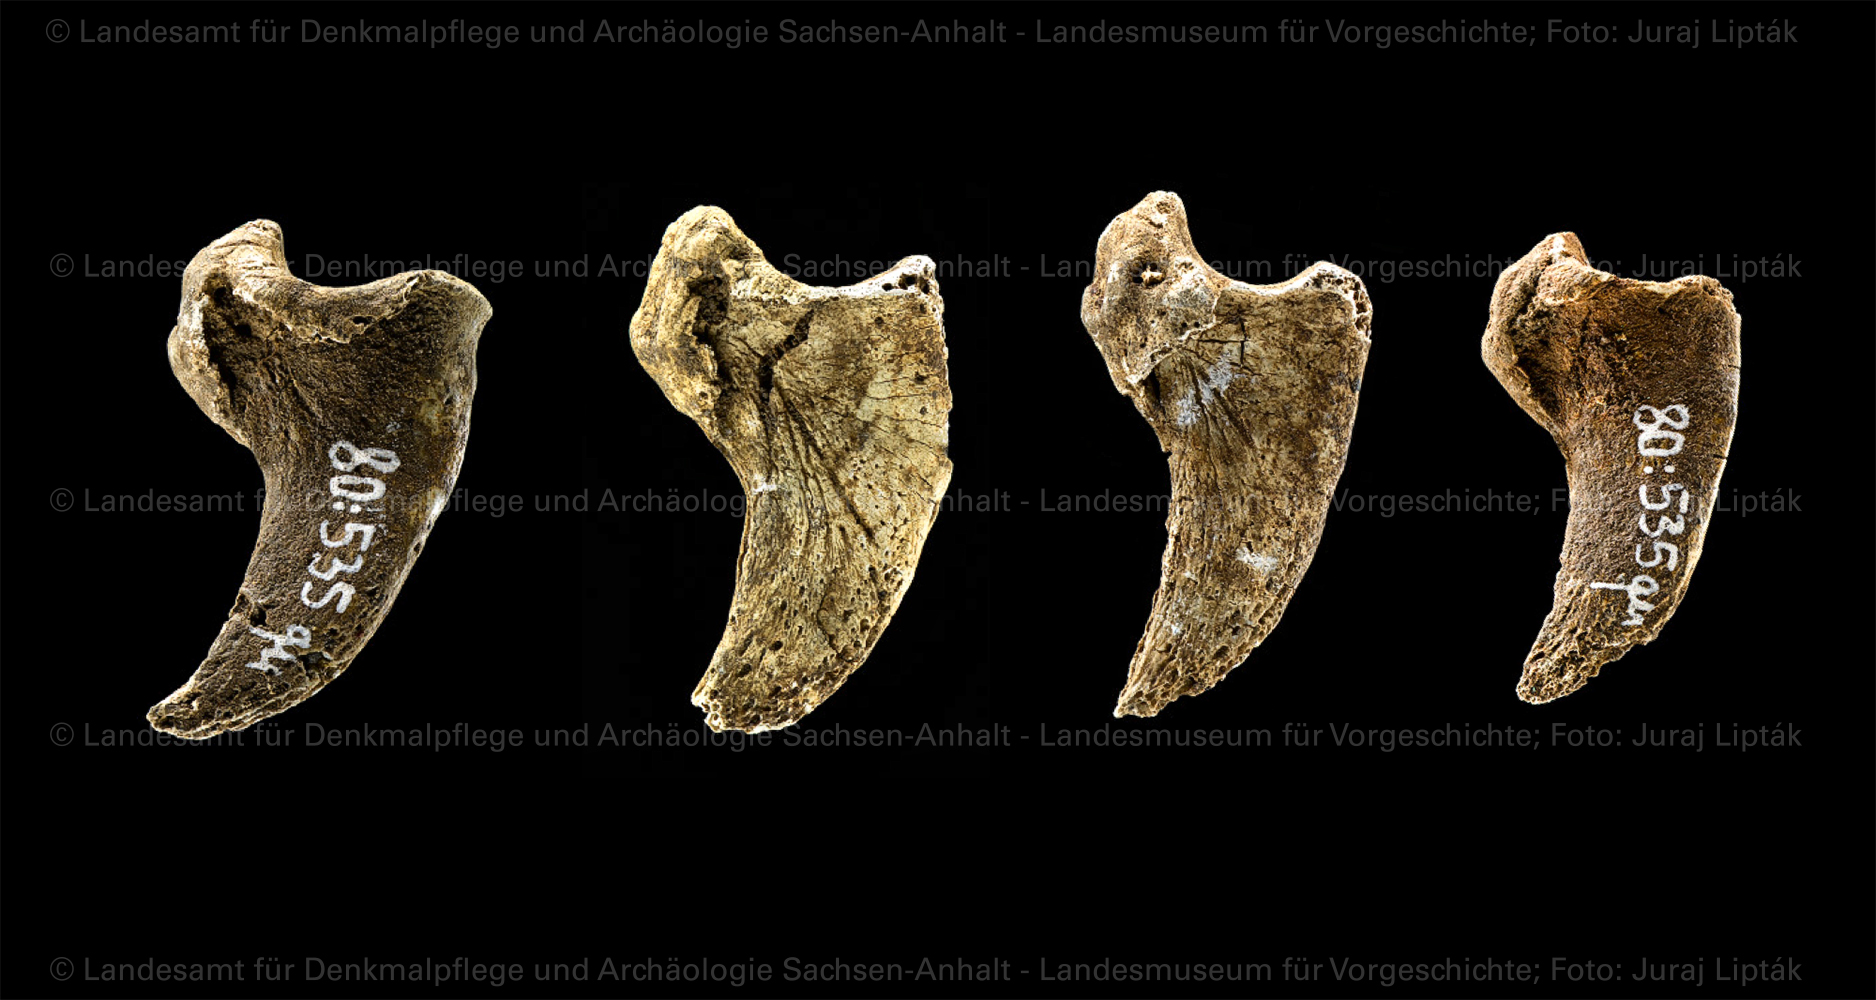 Krallenknochen eines Bären aus Grab 50 von Schkopau, Saalekreis (Landesamt für Denkmalpflege und Archäologie Sachsen-Anhalt - Landesmuseum für Vorgeschichte RR-F)